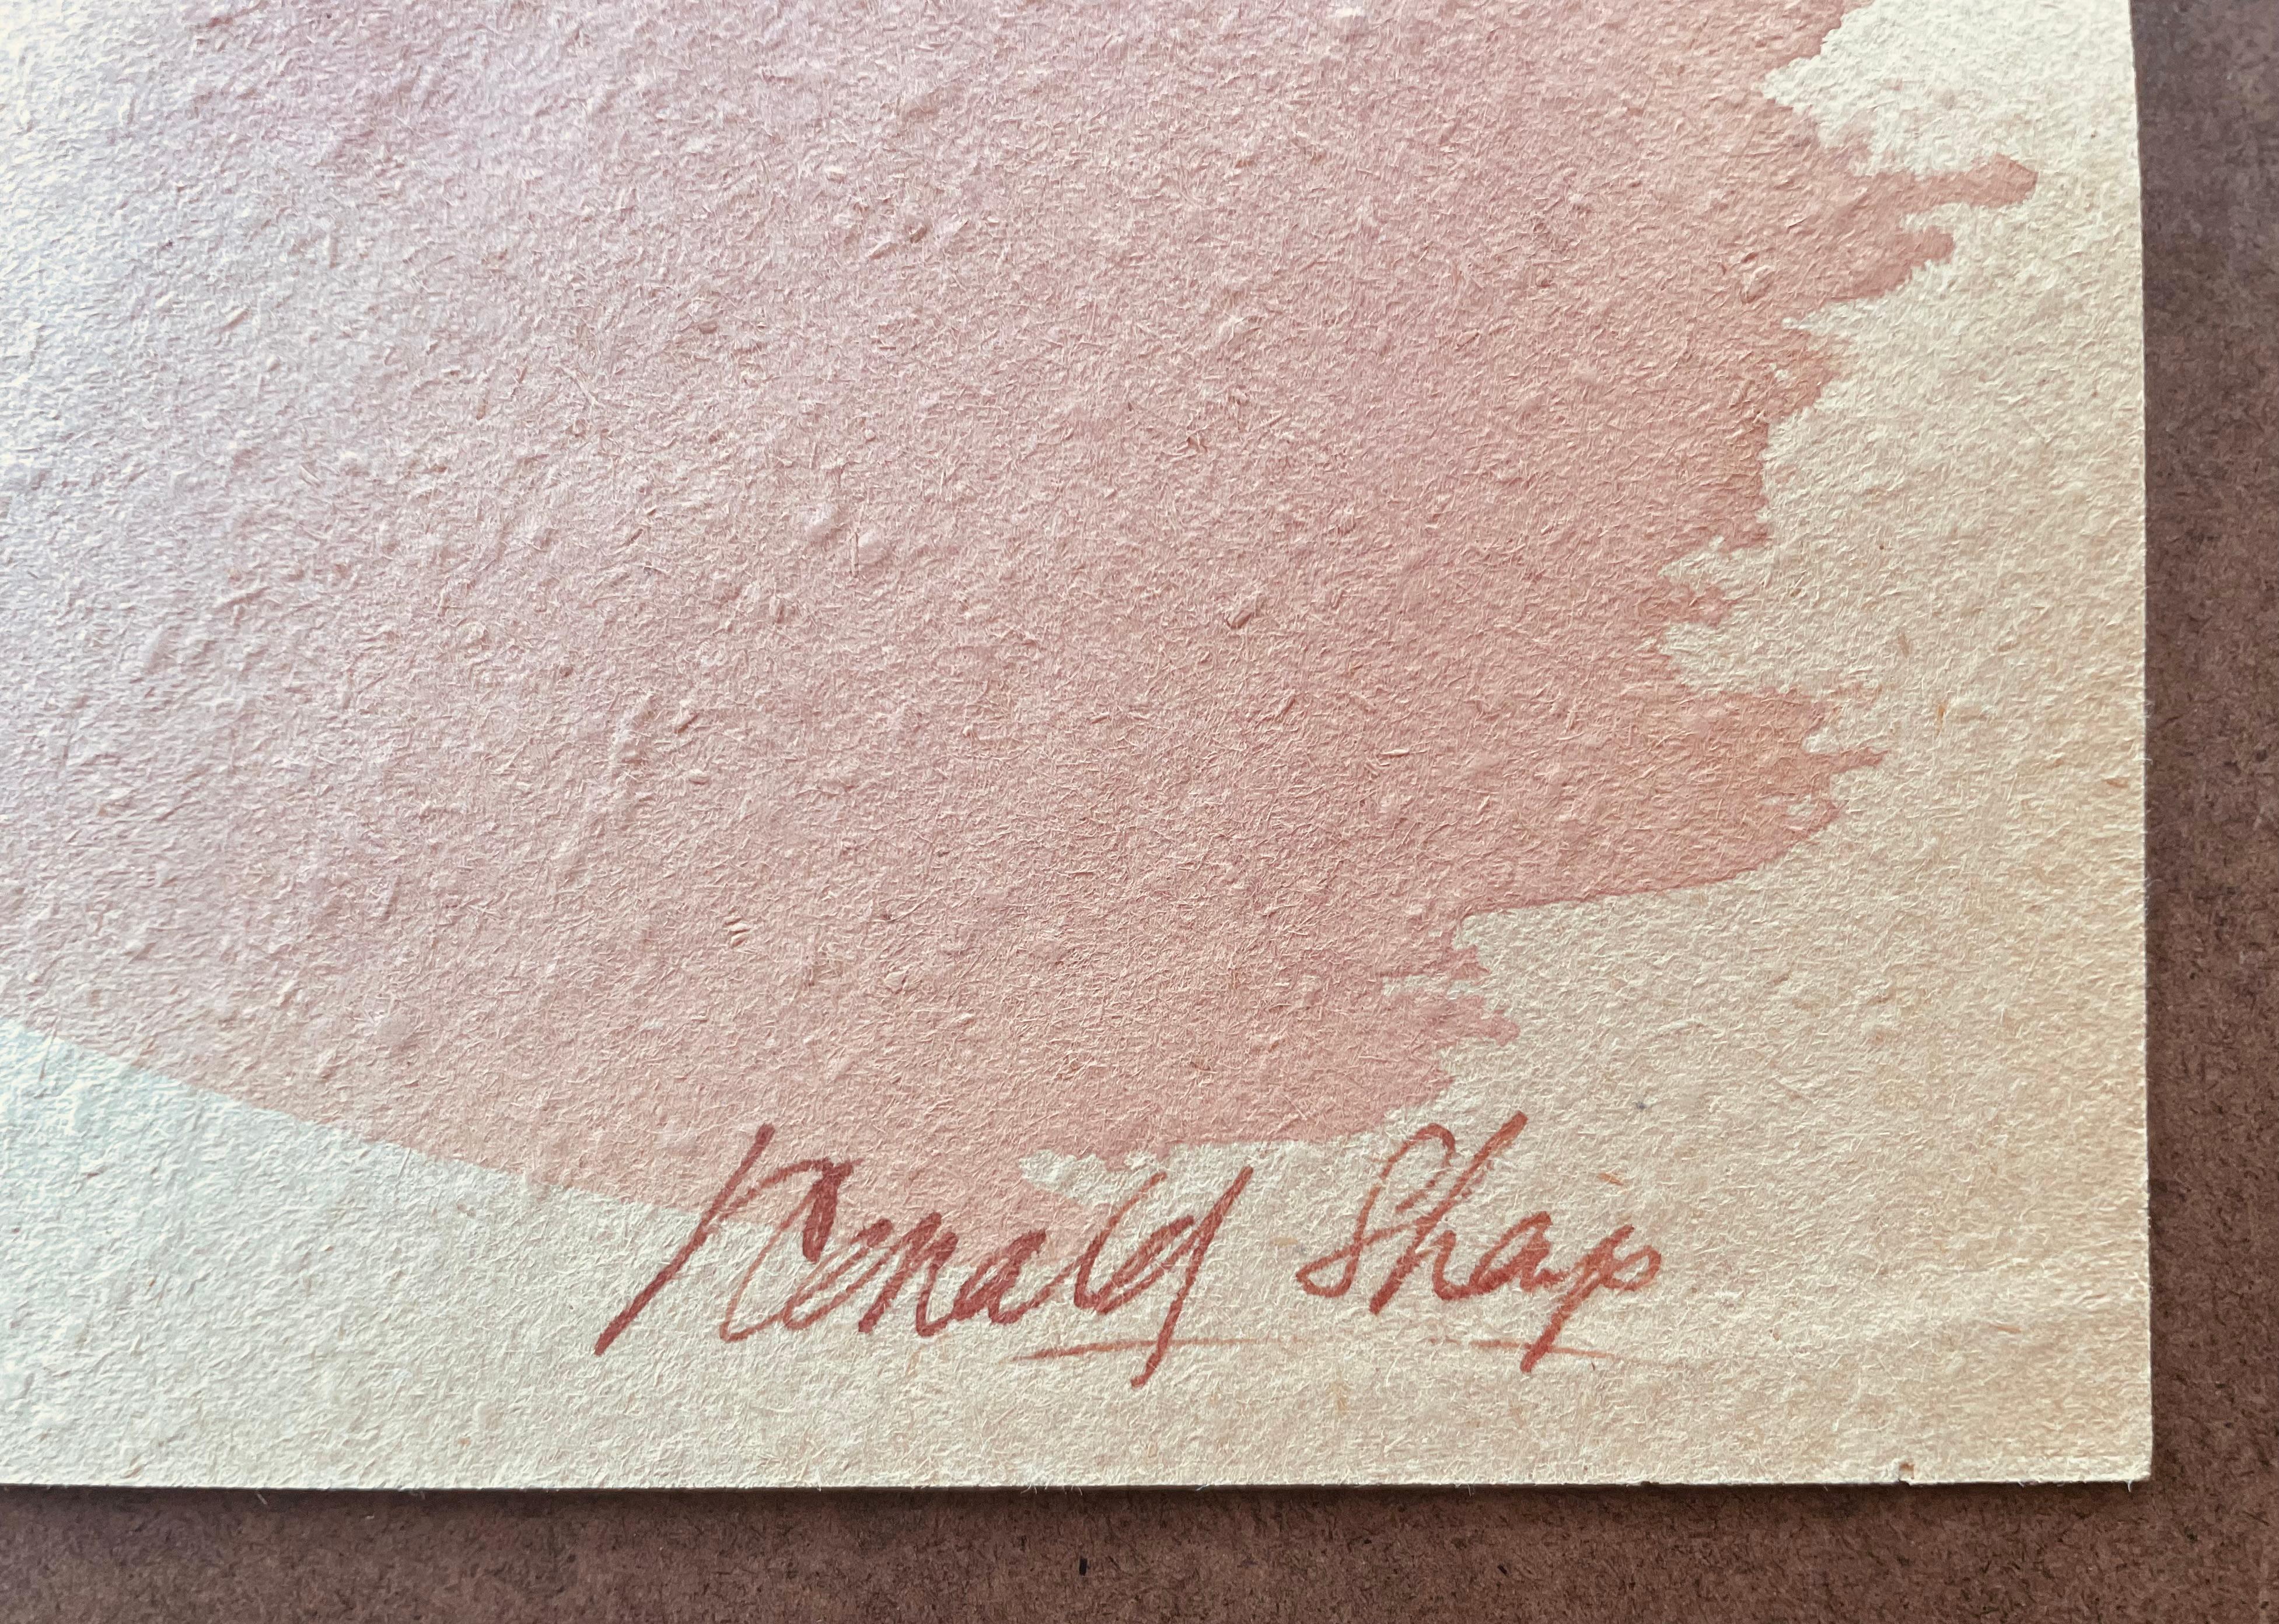 Original Ölpastell und Gouache-Figurenzeichnung des berühmten kalifornischen Landschaftsmalers Ronald Shap aus dem zwanzigsten Jahrhundert. Atemberaubende Skizze eines Aktes mit Lavierungen in Aqua und Rosa. Dies ist ein Teil von Shap'S '80s